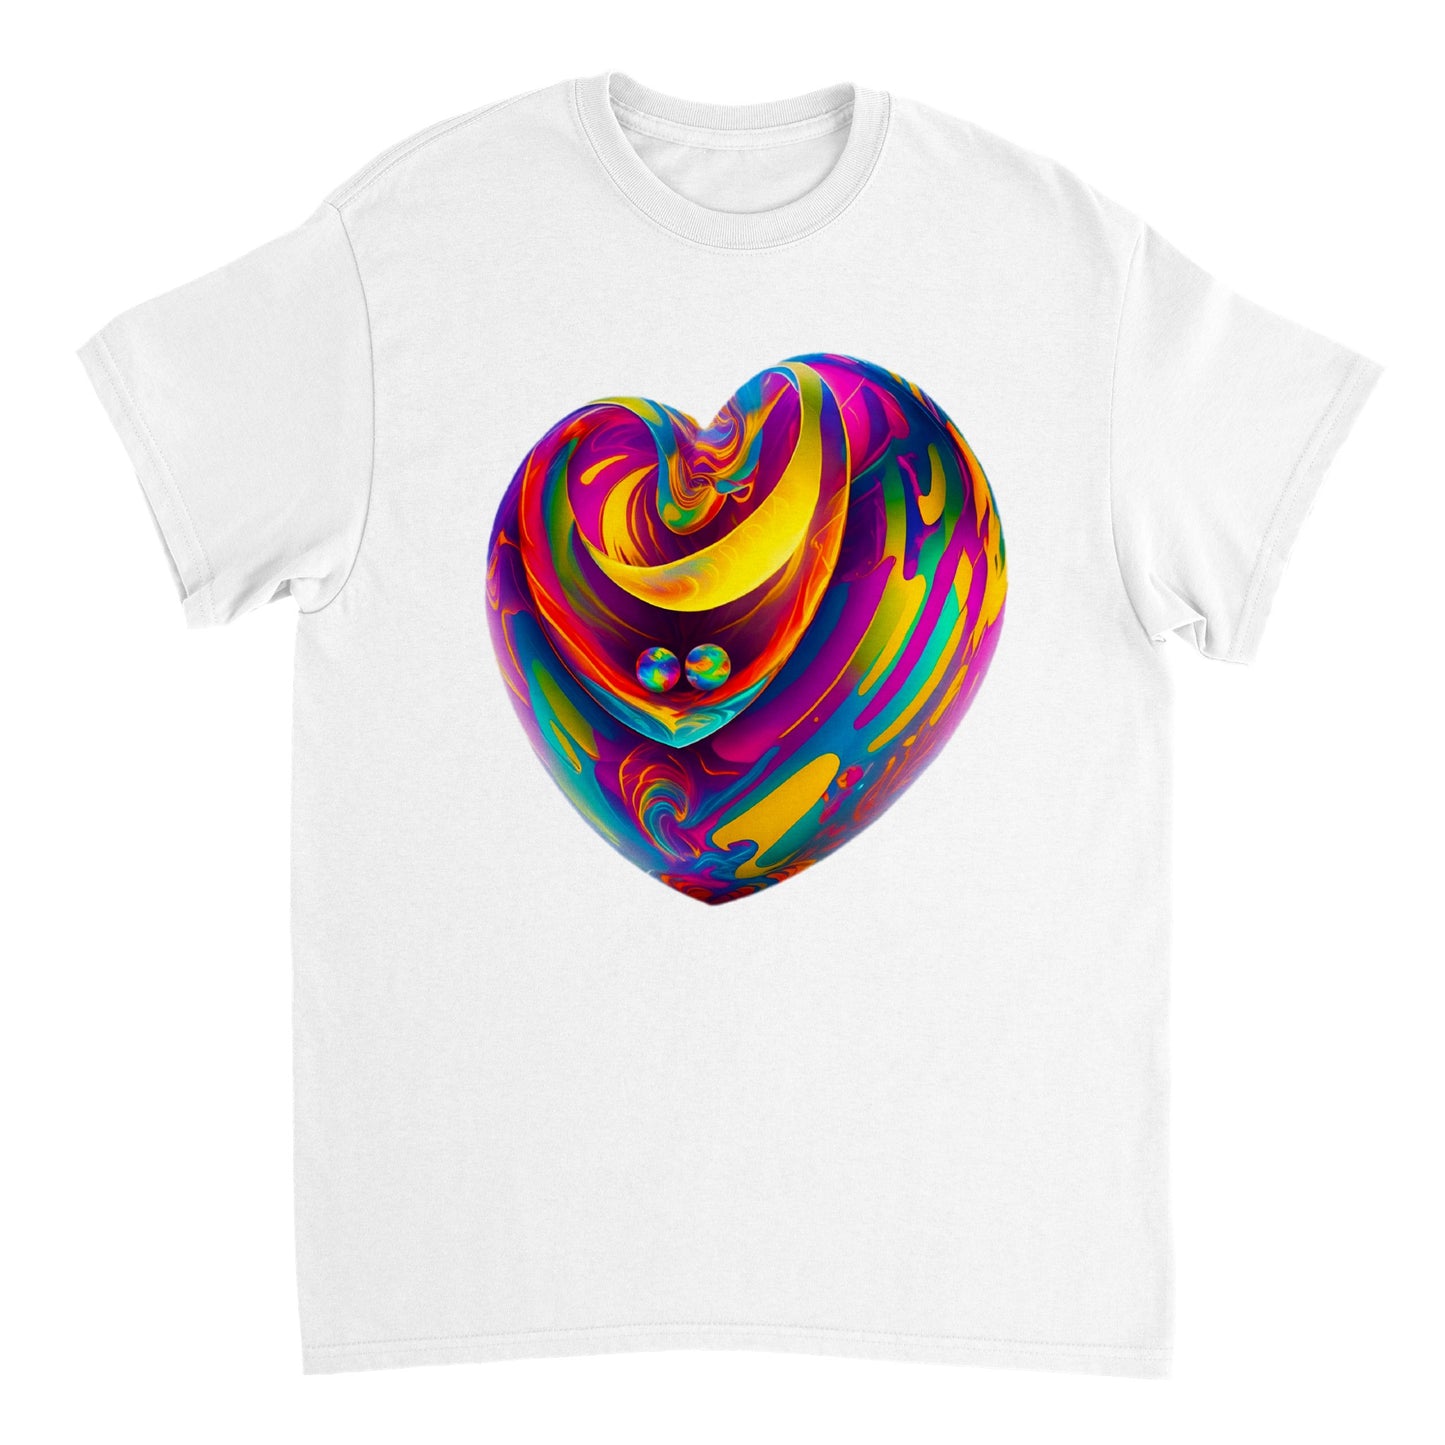 Love Heart - Heavyweight Unisex Crewneck T-shirt 102